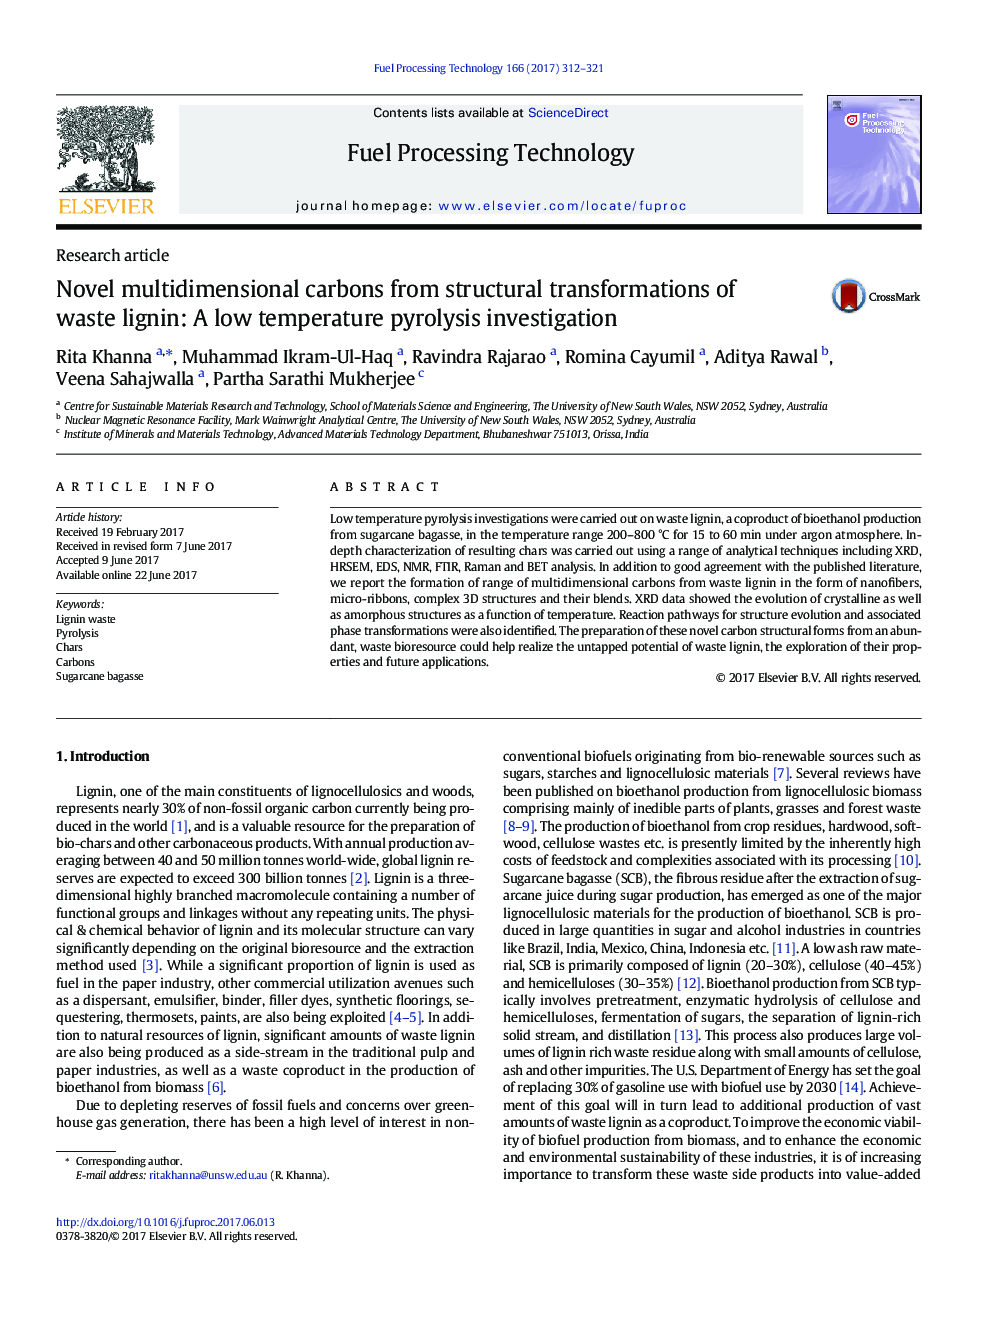 مقاله پژوهشی نوک کربن های چند بعدی از تغییرات ساختاری لیگنین زباله: تحقیقات پیریلیس پایین 